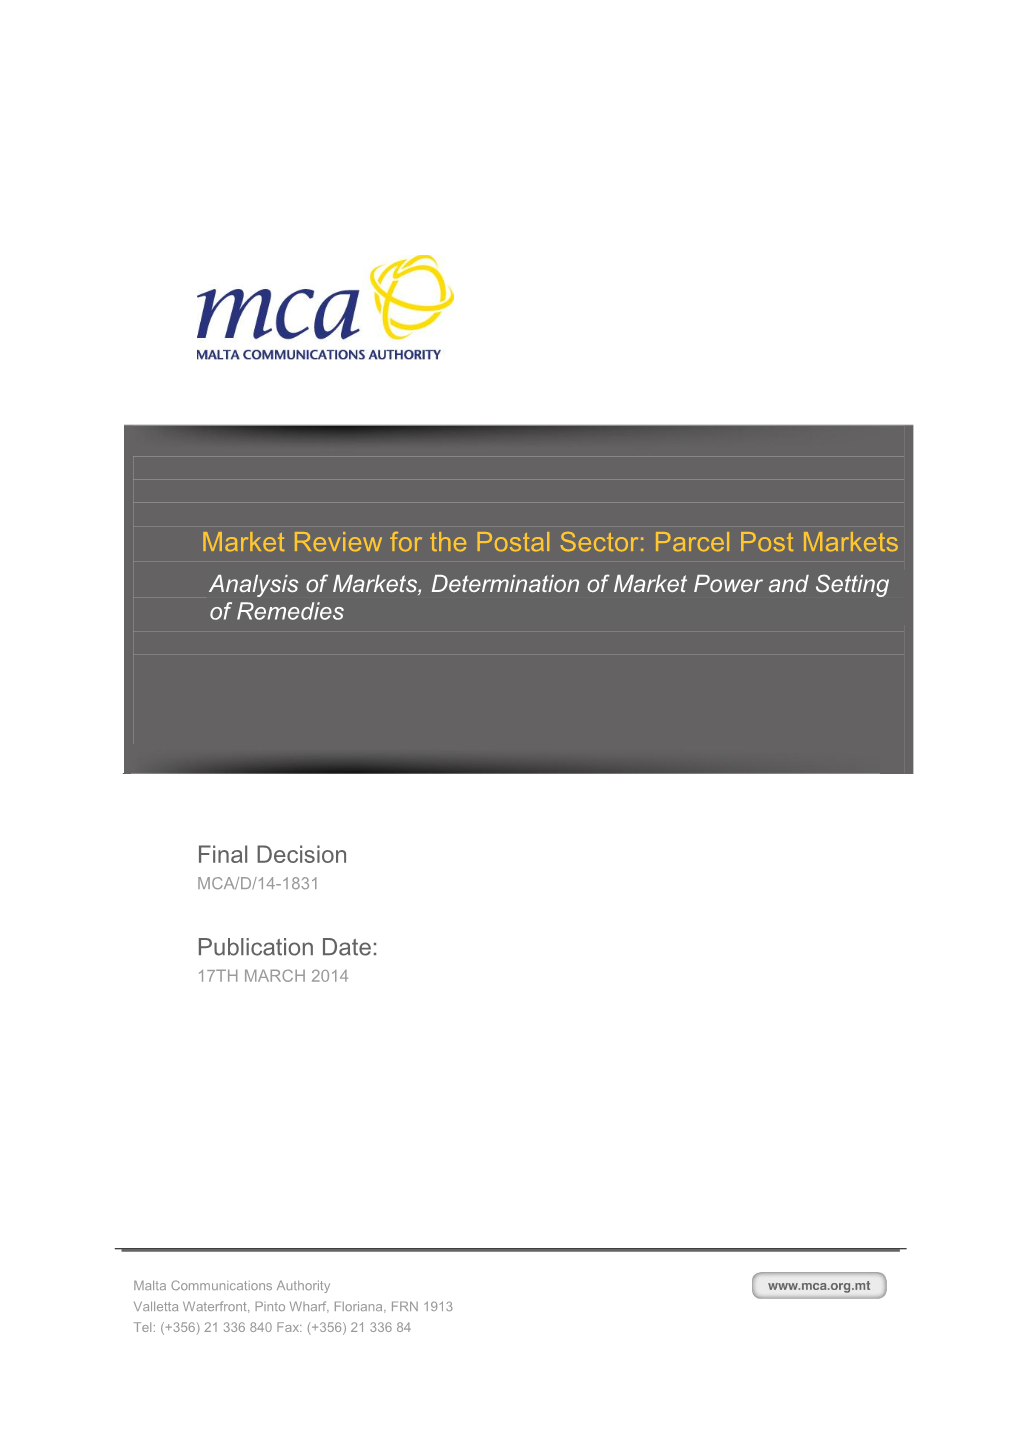 Postal Market Review Parcel Post Markets Final Decision